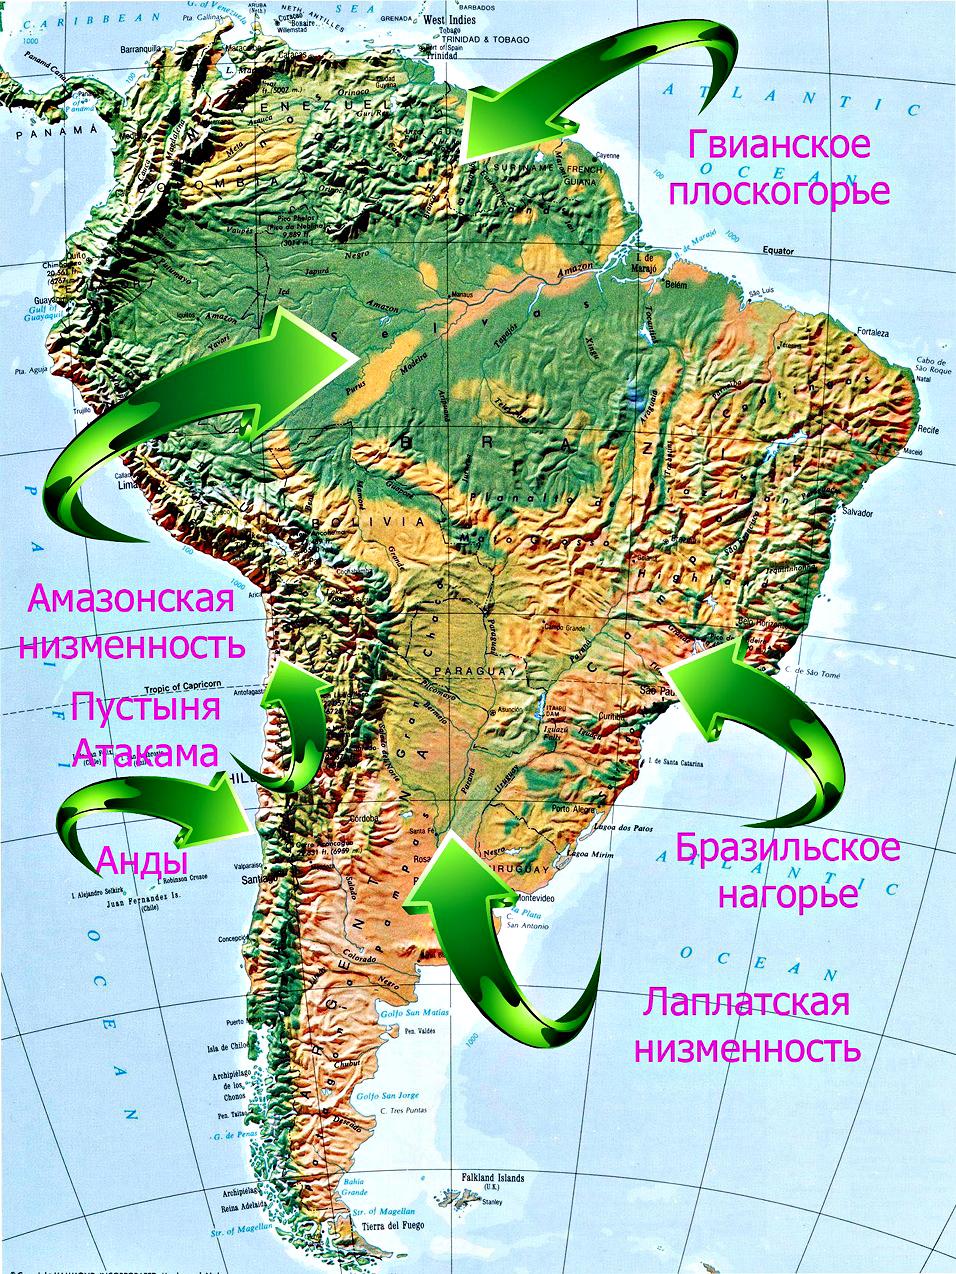 Древней североамериканской платформе в рельефе соответствуют. Горы и низменности Южной Америки на карте. Горы и равнины Южной Америки на карте. Низменности и Плоскогорья Южной Америки на карте. Ла-Платская низменность на карте Южной Америки.